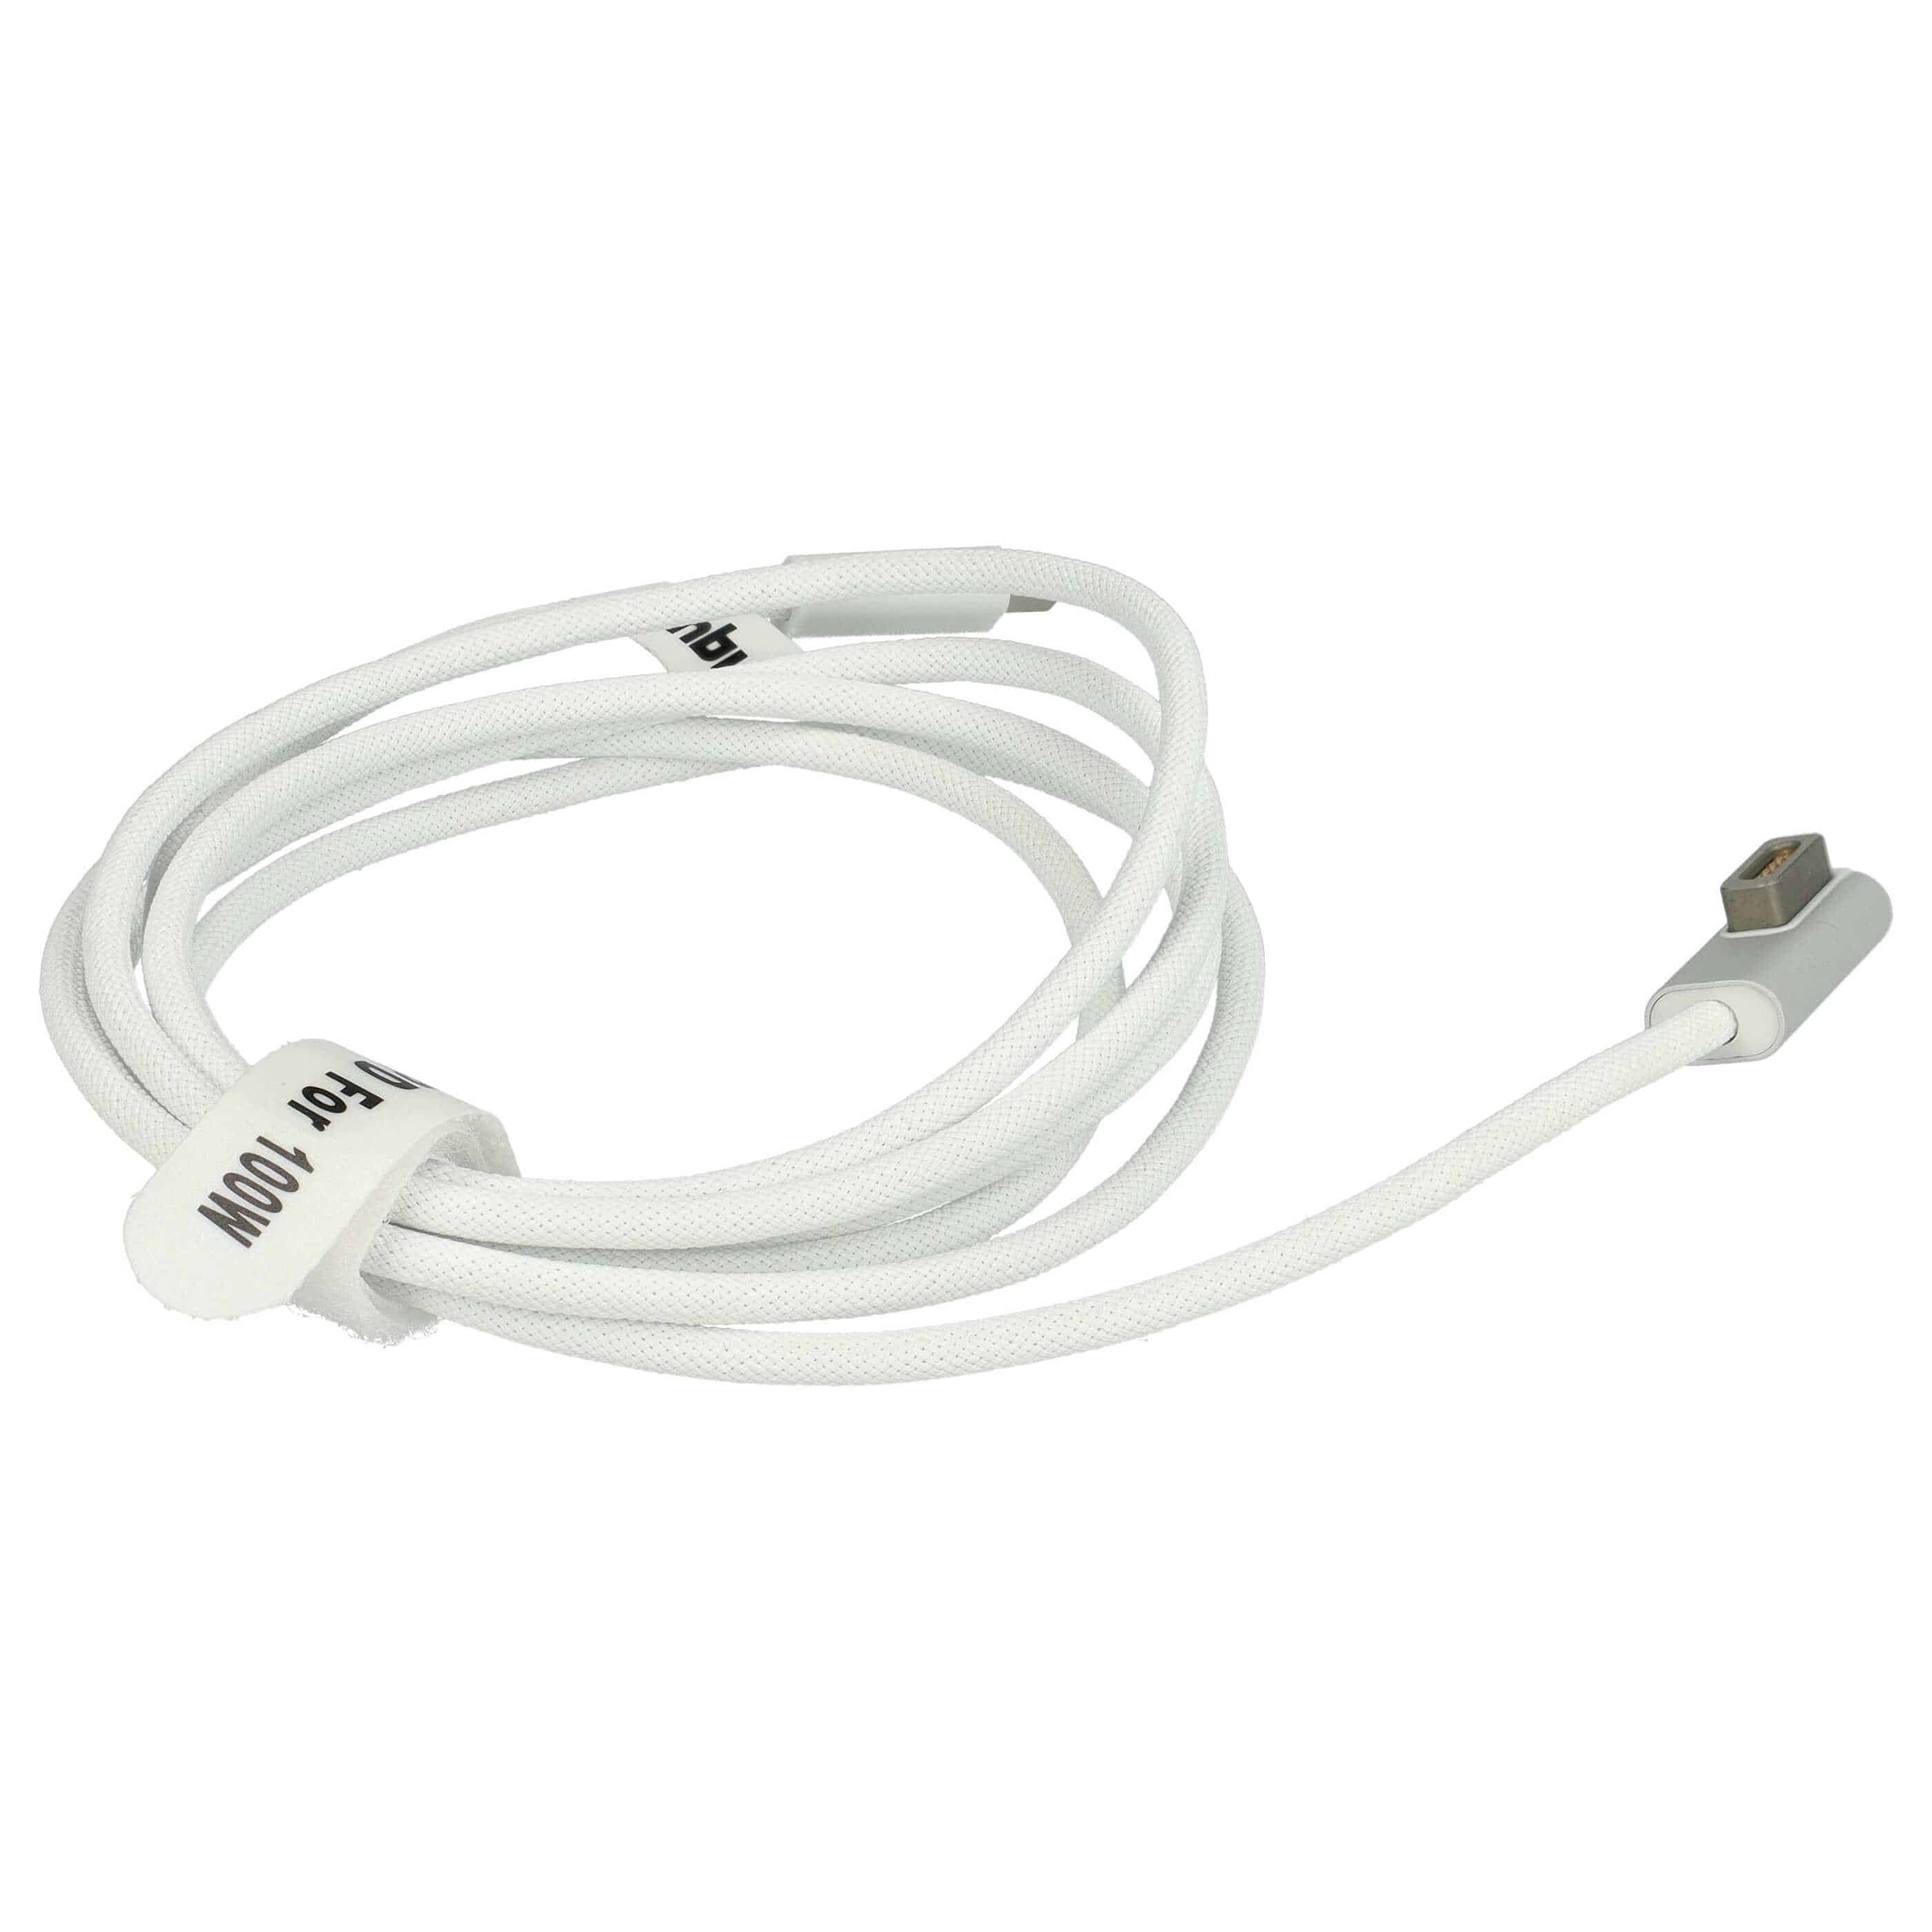 Kabel USB-C na MagSafe 1 do laptopa Apple zamiennik Apple ADA-C2MS1 - 100 W, nylonowa powłoka